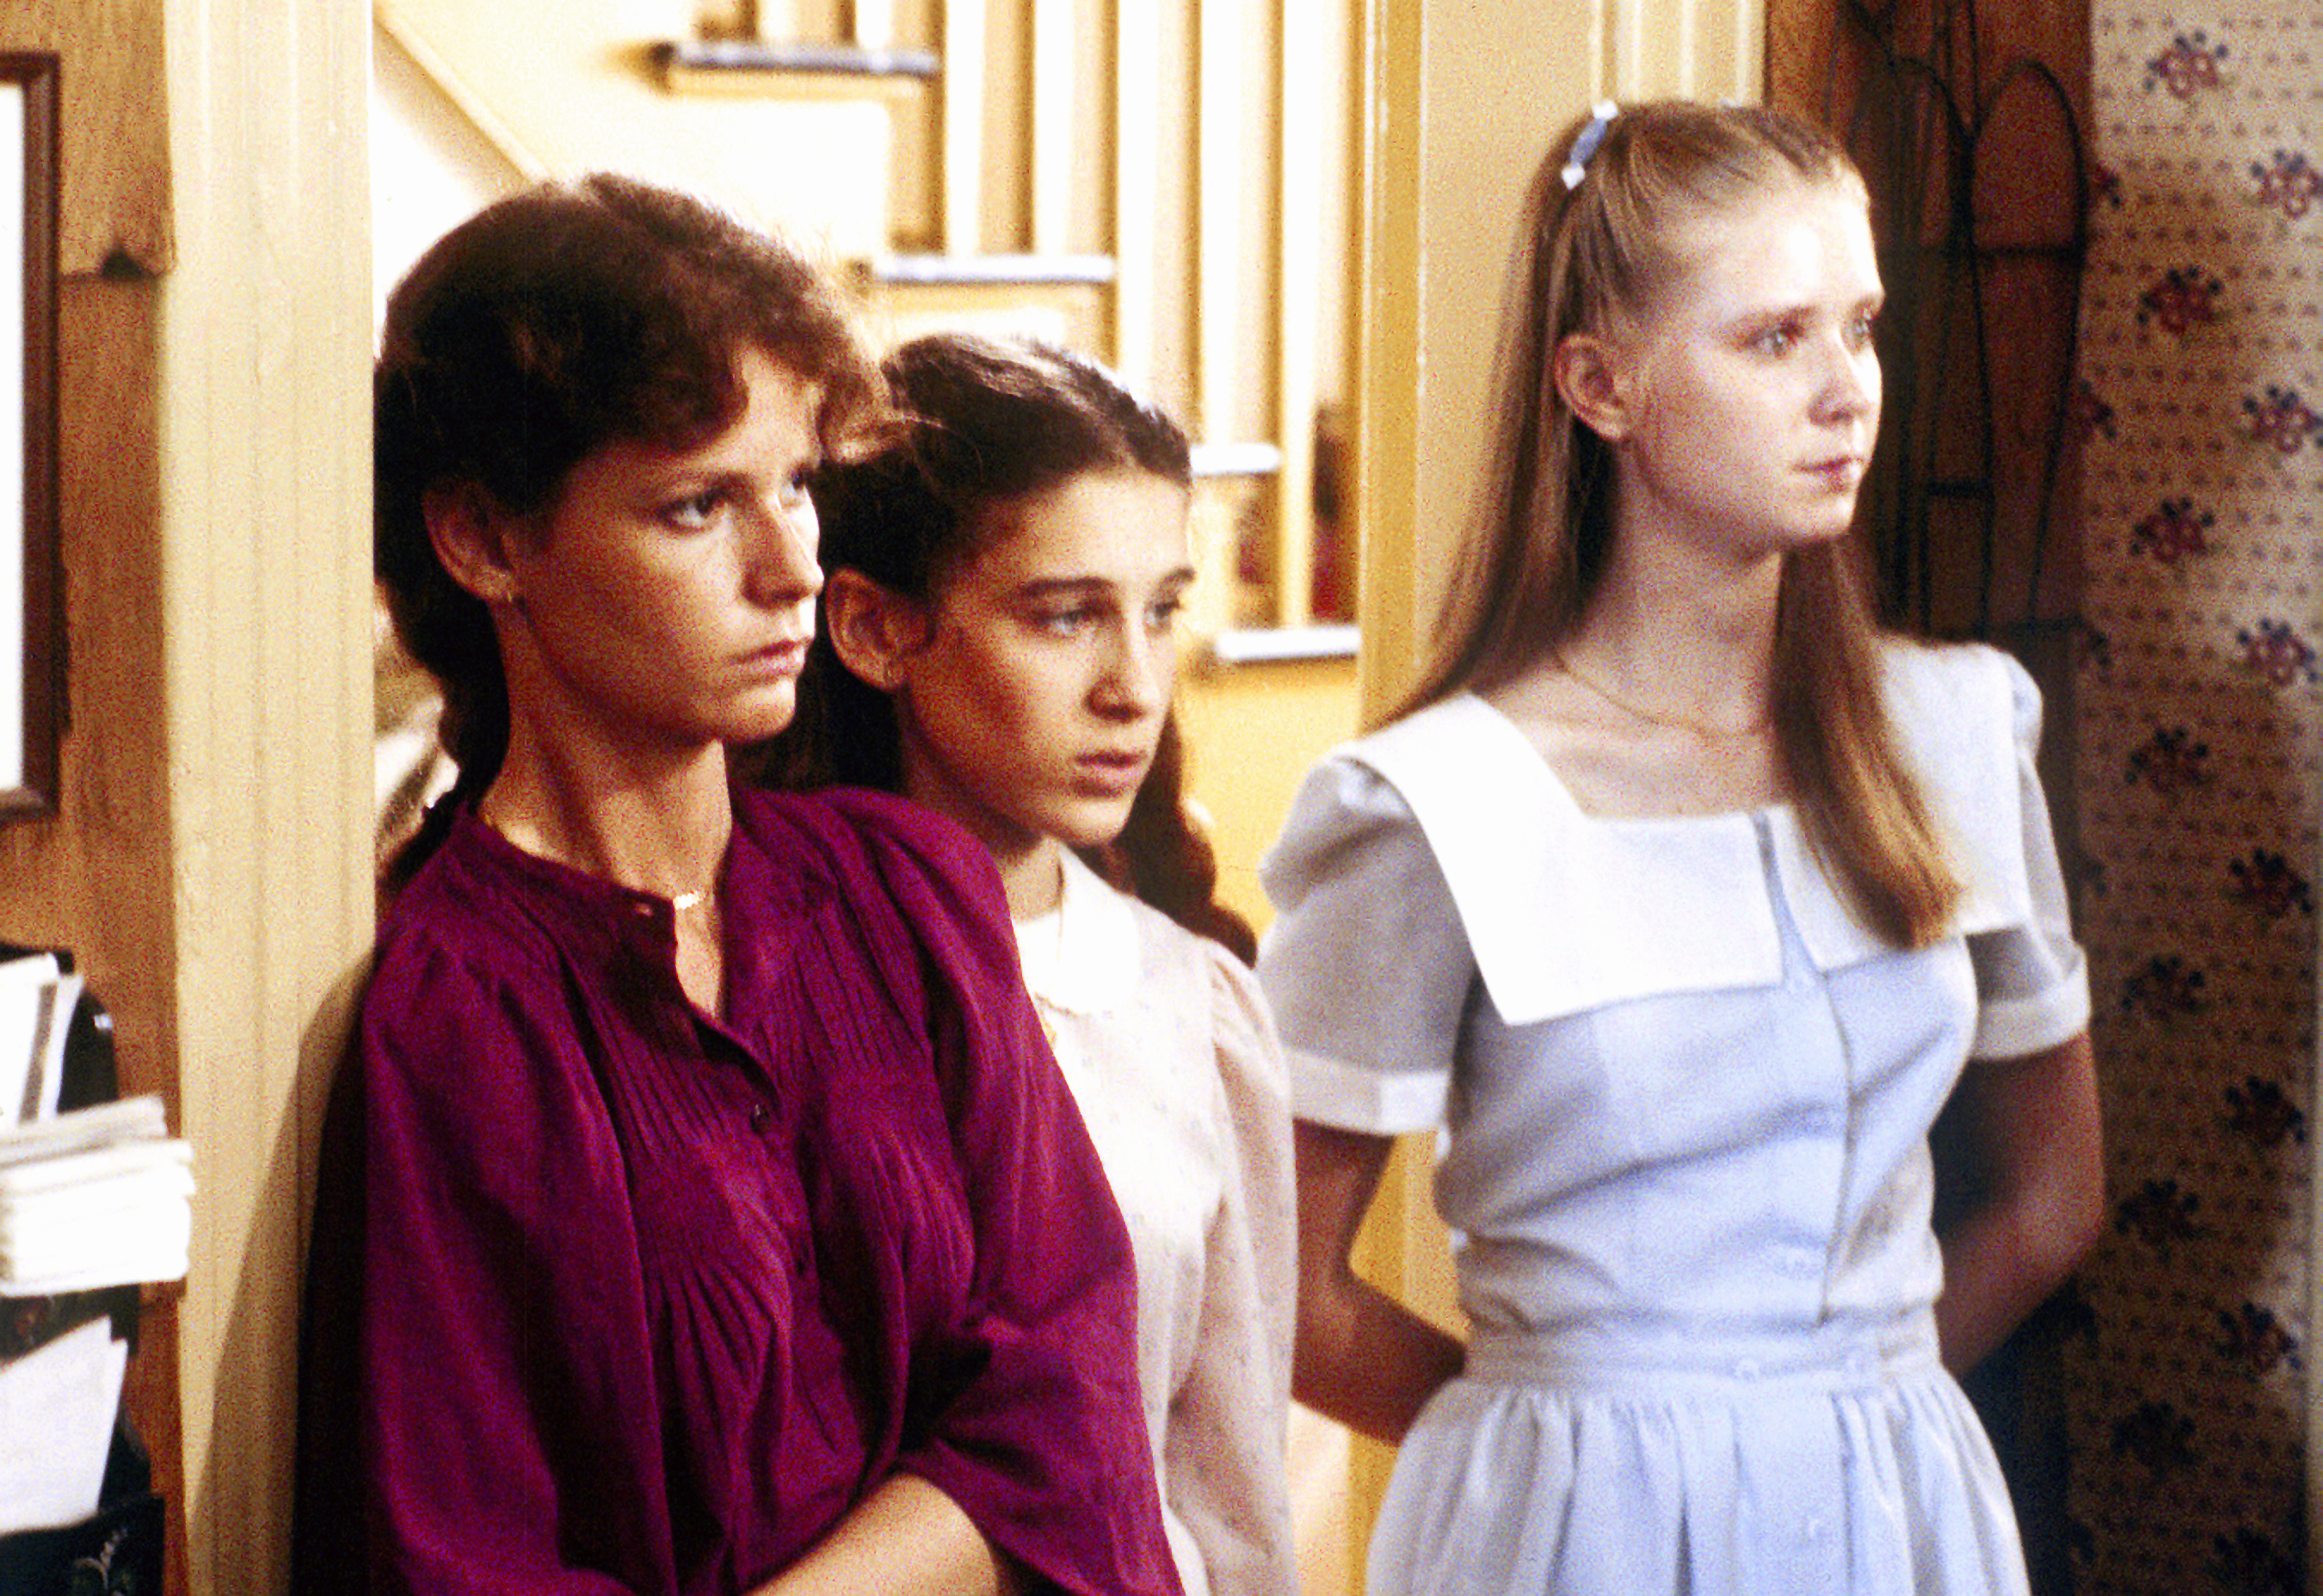 (L-R) Maia Danziger (als Barbara), Sarah J. Parker (als Katy) und Cynthia Nixon (als Nancy) in dem Film "My Body, My Child" am 12. April 1982 | Quelle: Getty Images